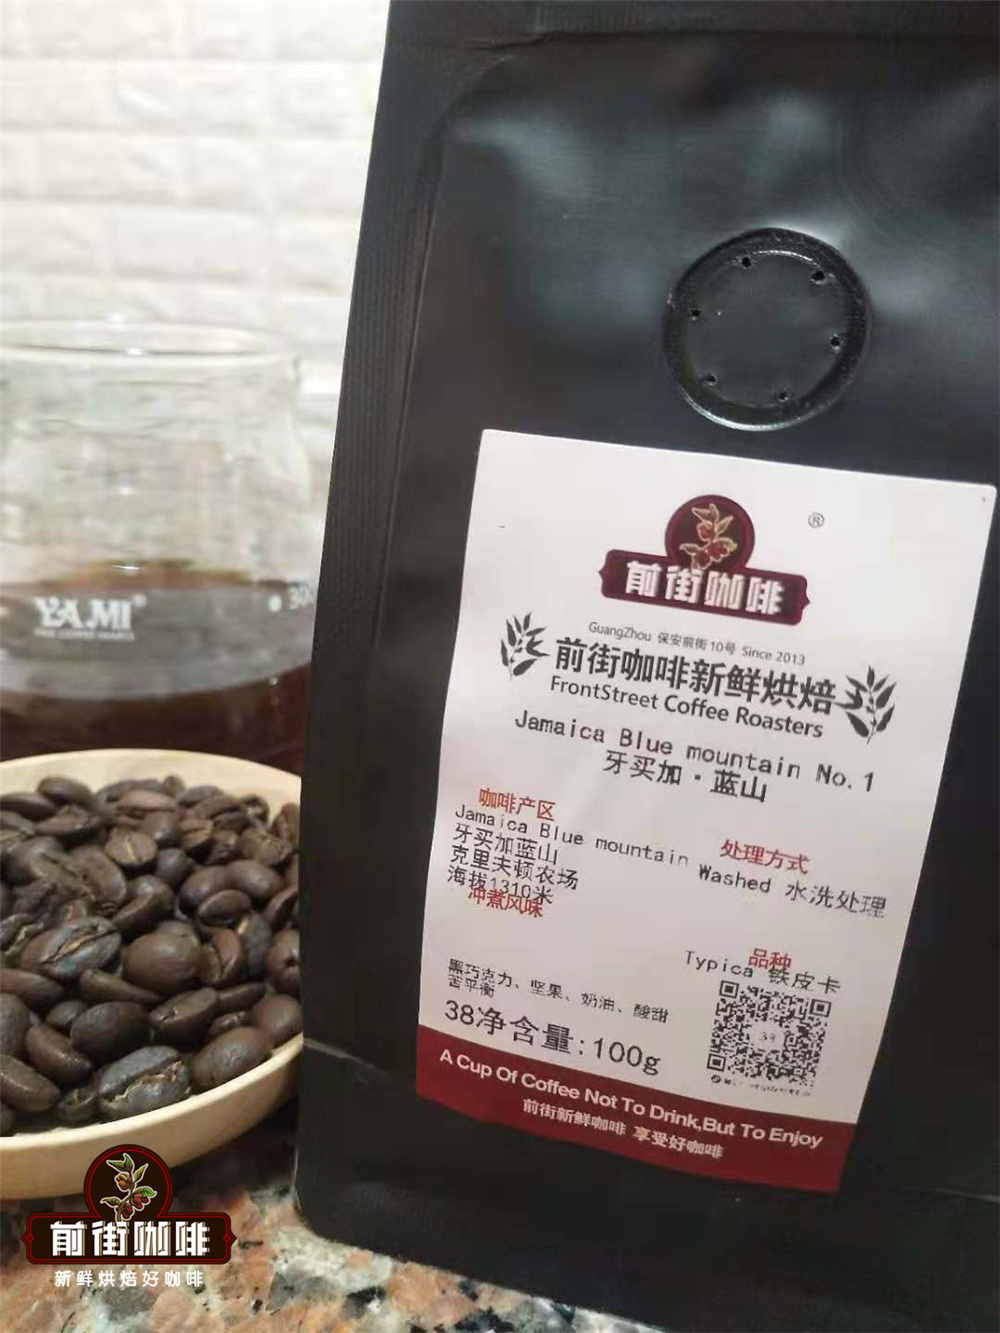 爲什麼一些精品咖啡比其他咖啡更貴?藍山咖啡比瑰夏咖啡貴嗎?